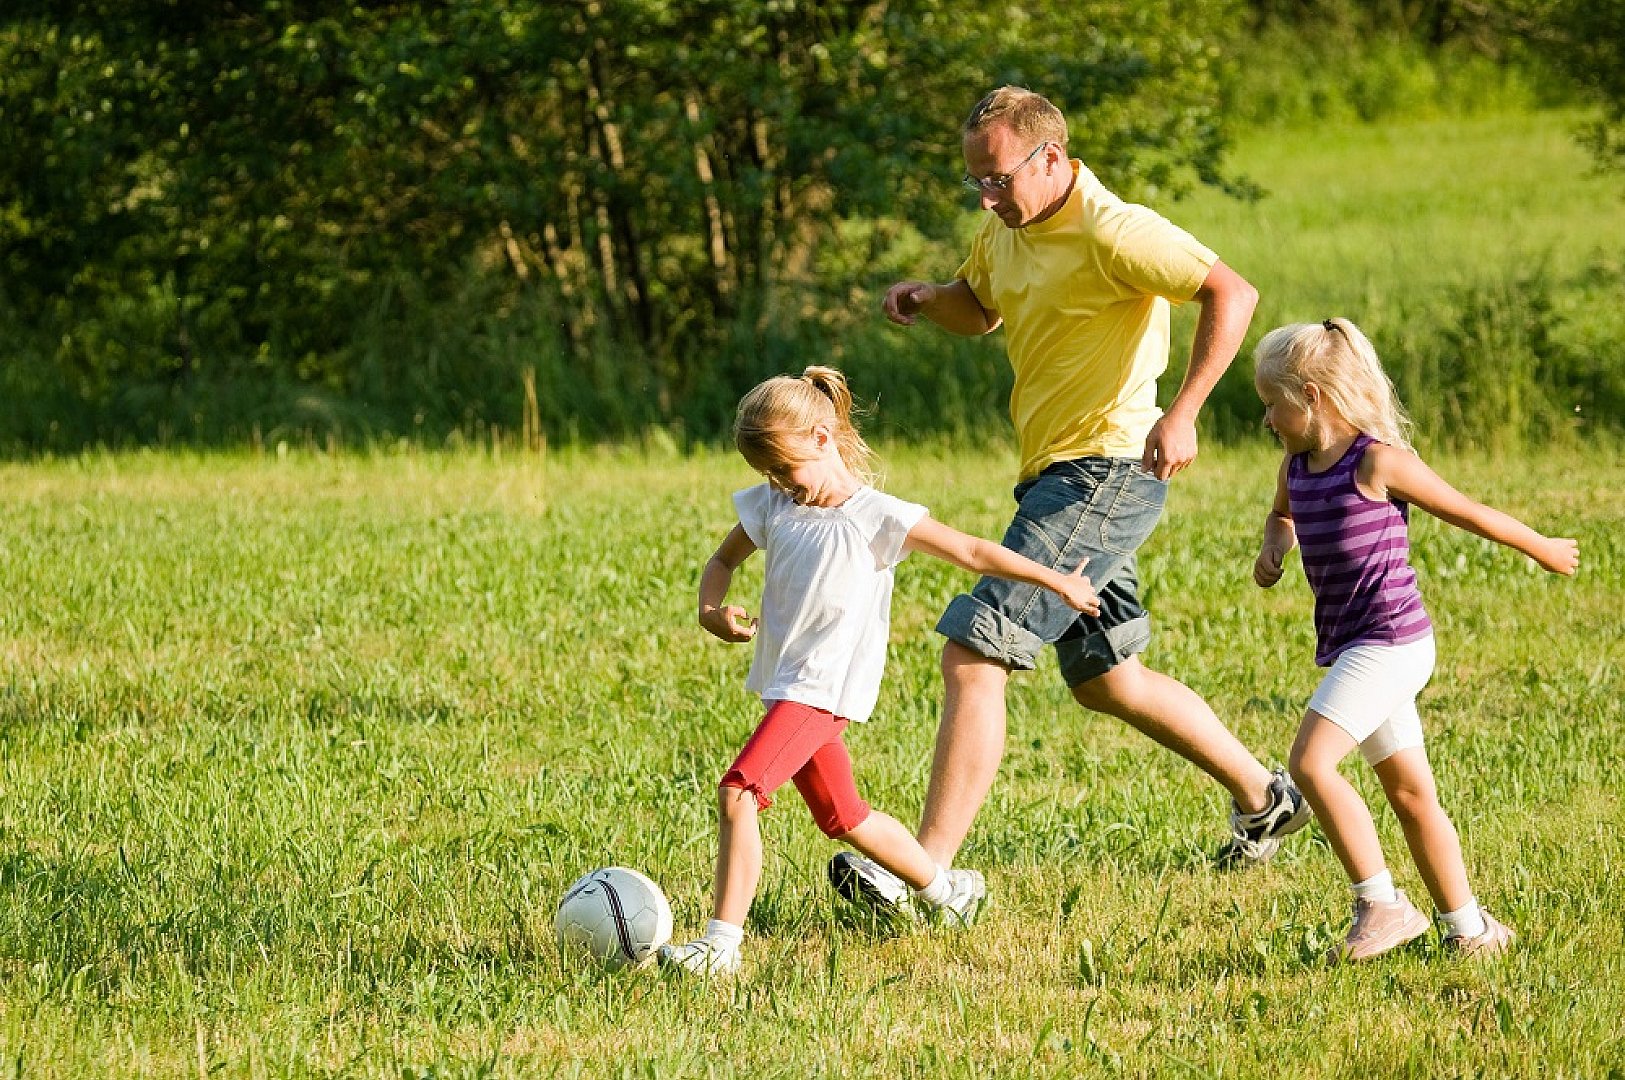 Играть на свежем воздухе. Занятия спортом на свежем воздухе. Прогулка на природе. Игры на свежем воздухе для детей. Спортивная семья на природе.